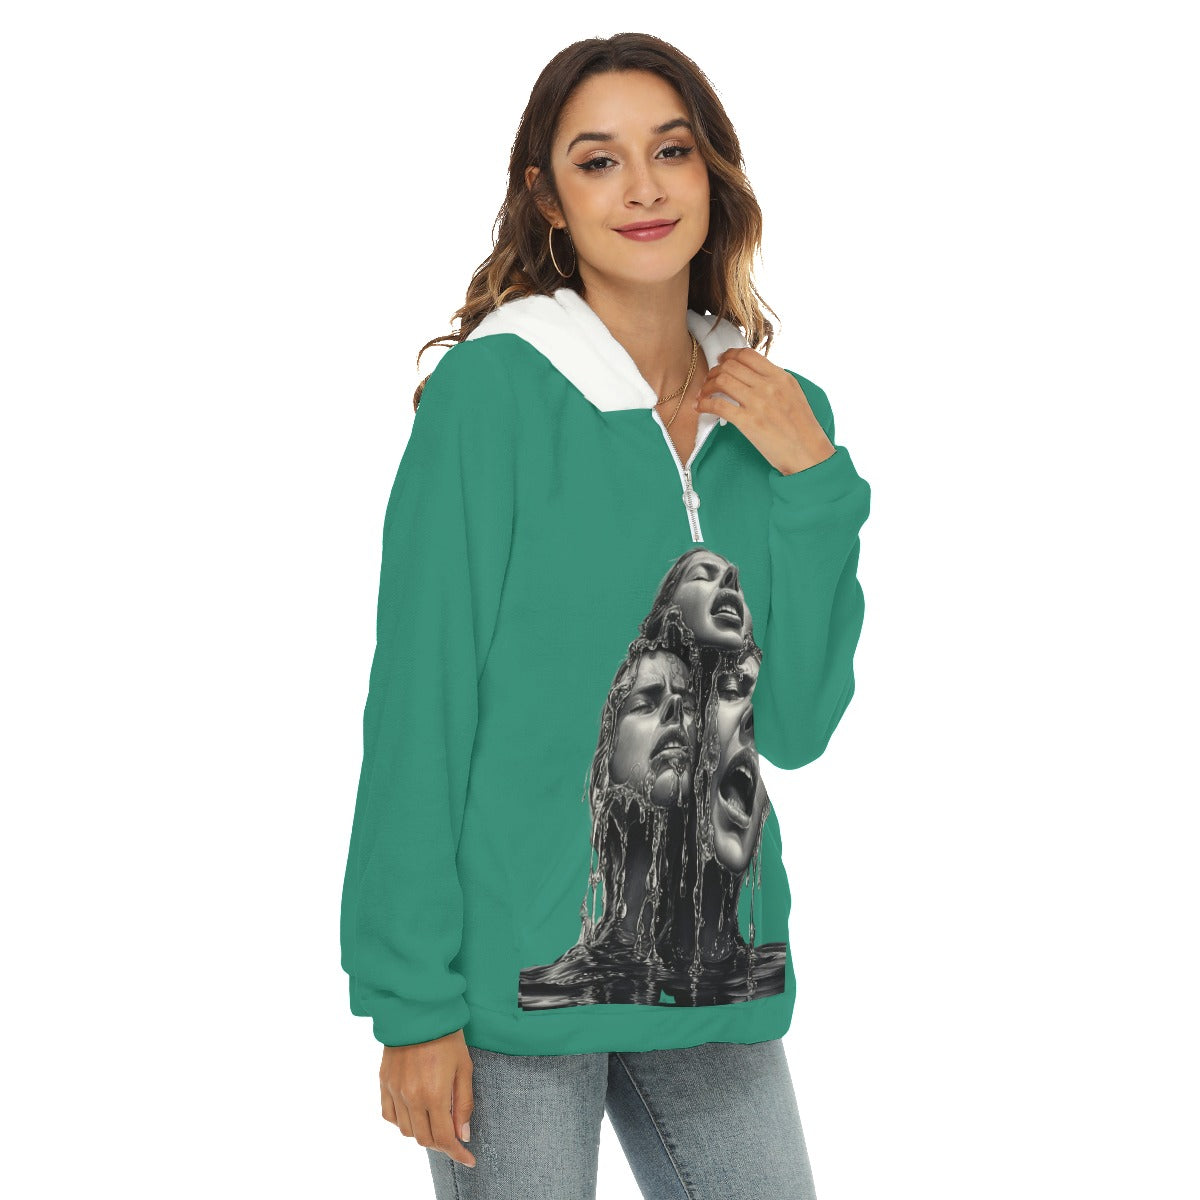 All-Over Print Women's Borg Fleece Hoodie With Half Zip